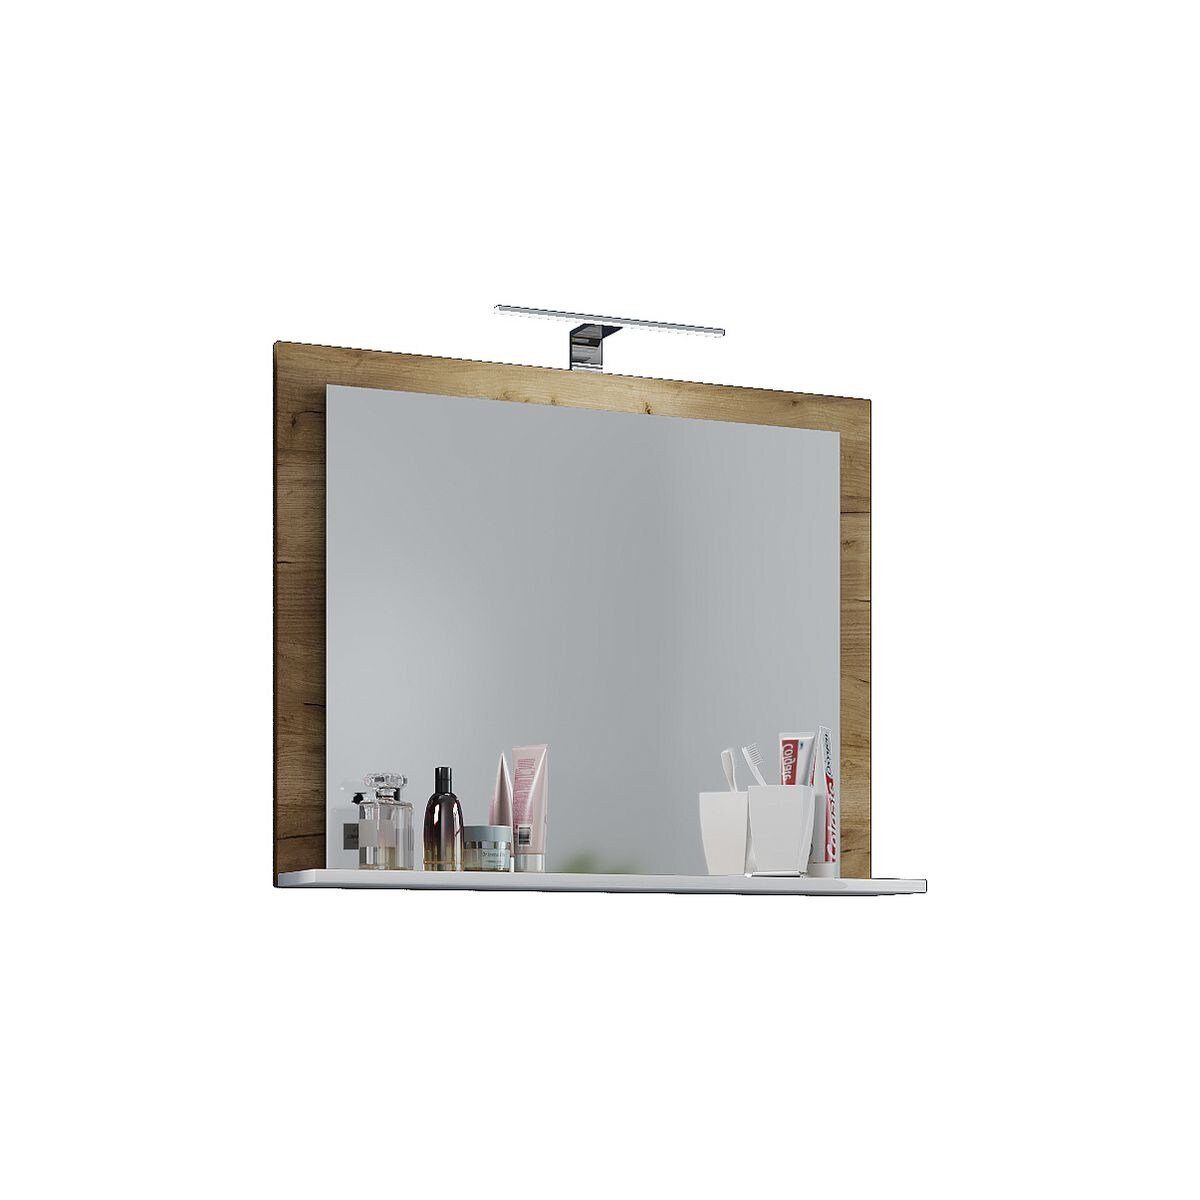 VCM Spiegel Badspiegel Wandspiegel mit Lendas Ablage, Badezimmer Spiegel  aus strapazierfähigem Glas